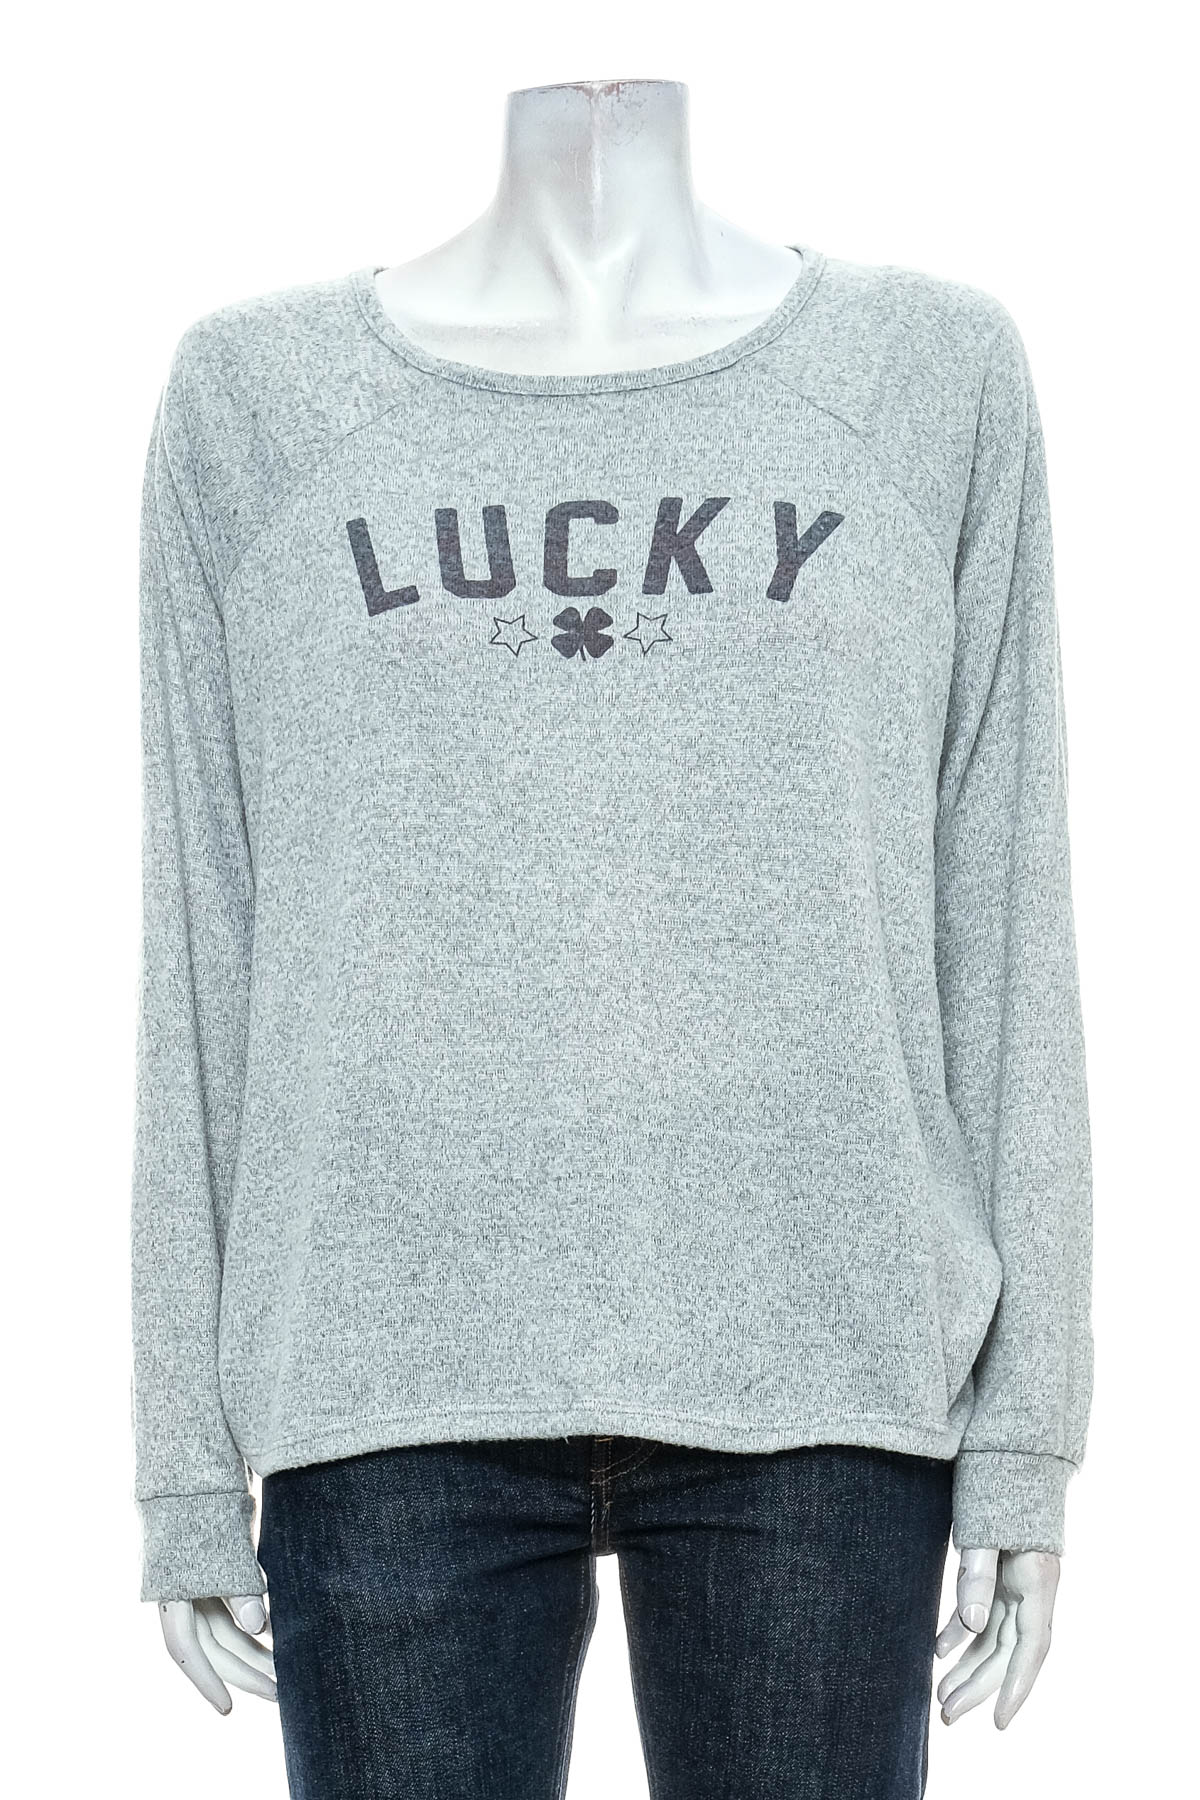 Women's sweater - Lucky Brand - 0